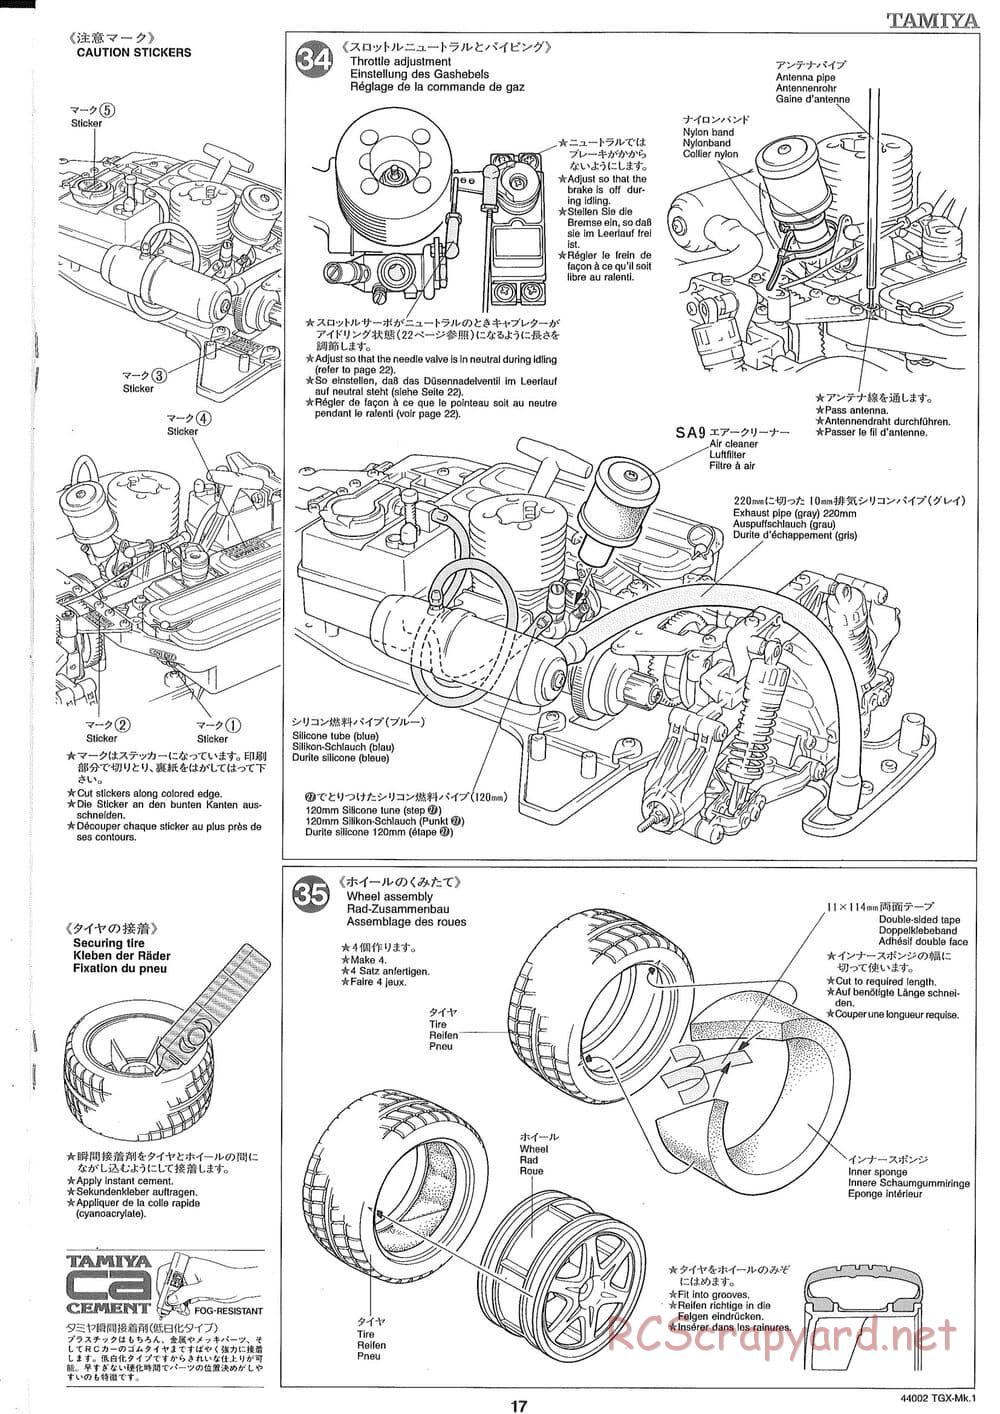 Tamiya - TGX Mk.1 TS Chassis Chassis - Manual - Page 17